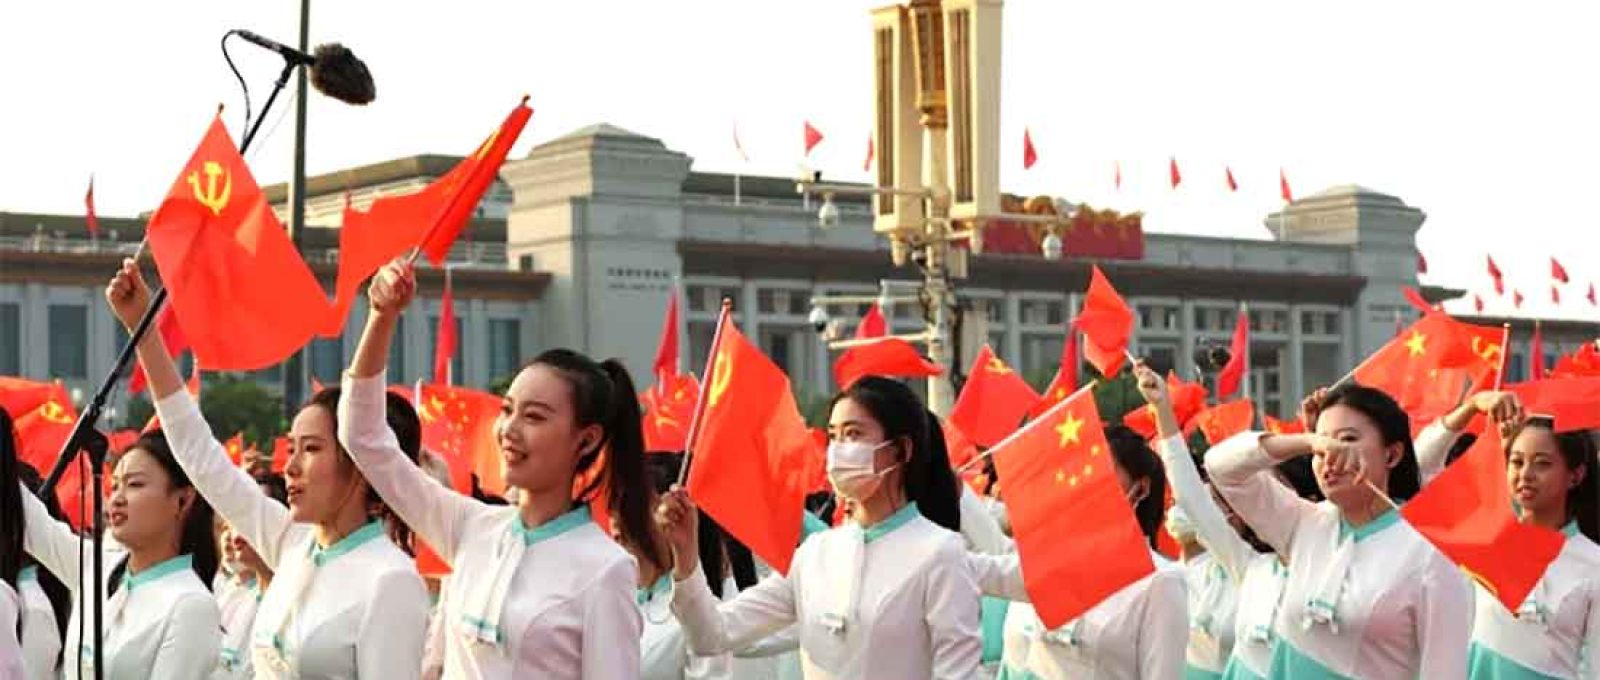 Meninas ensaiam na Praça Tiananmen, Pequim, antes do desfile comemorativo do 100º aniversário da fundação do Partido Comunista Chinês (Foto: Foreign Policy).